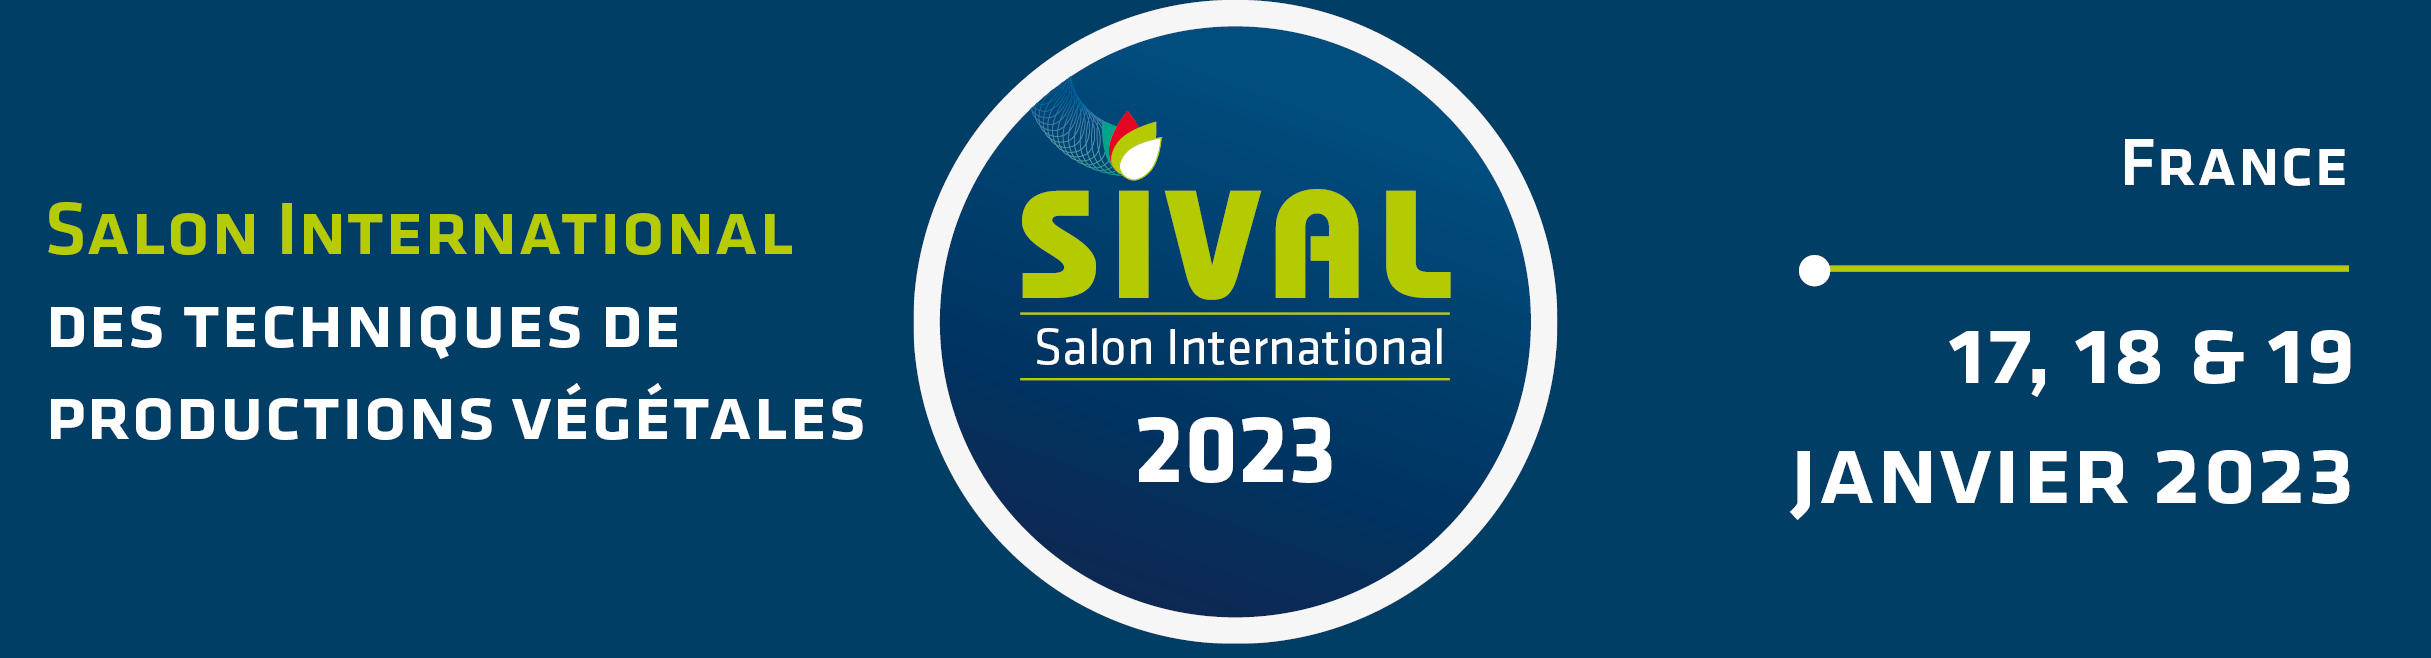 BANNIERE SIVAL 2023 -FR